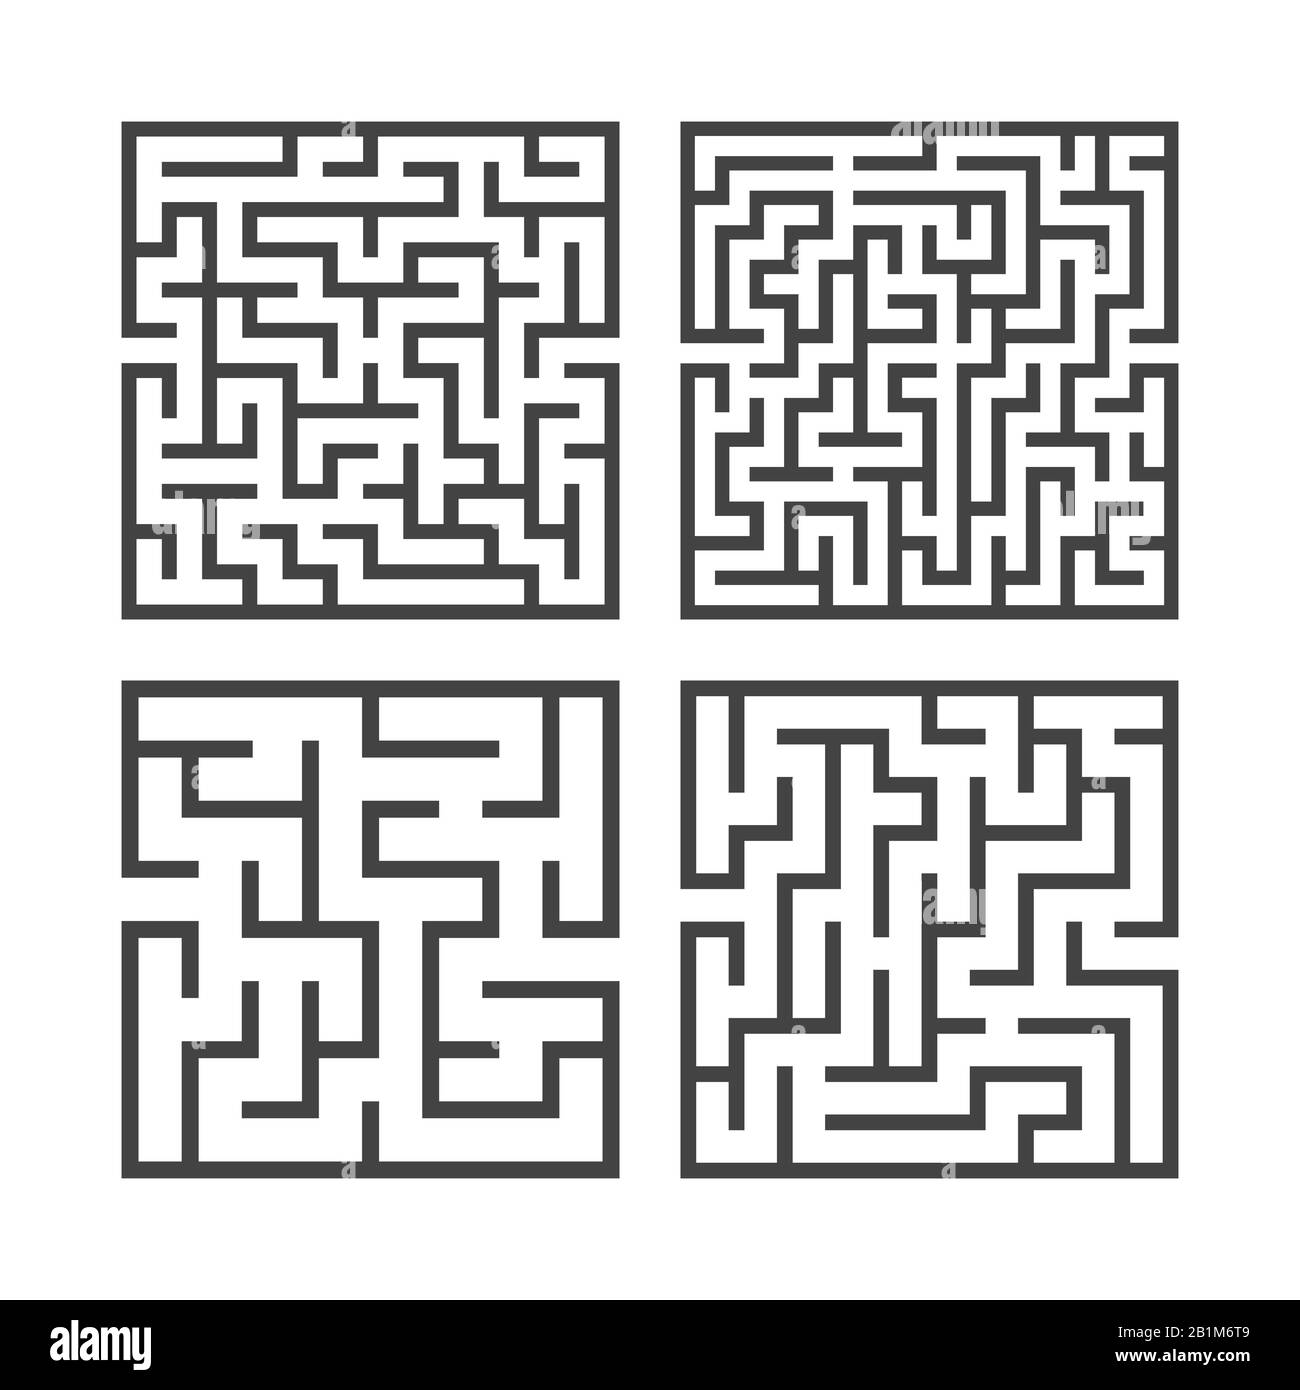 Ein Satz quadratischer Labyrinthe mit verschiedenen Schwierigkeitsgraden. Spiel für Kinder. Puzzle für Kinder. Ein Eingang, ein Ausgang. Labyrinth-Rätsel. Flacher Vektor i. Stock Vektor